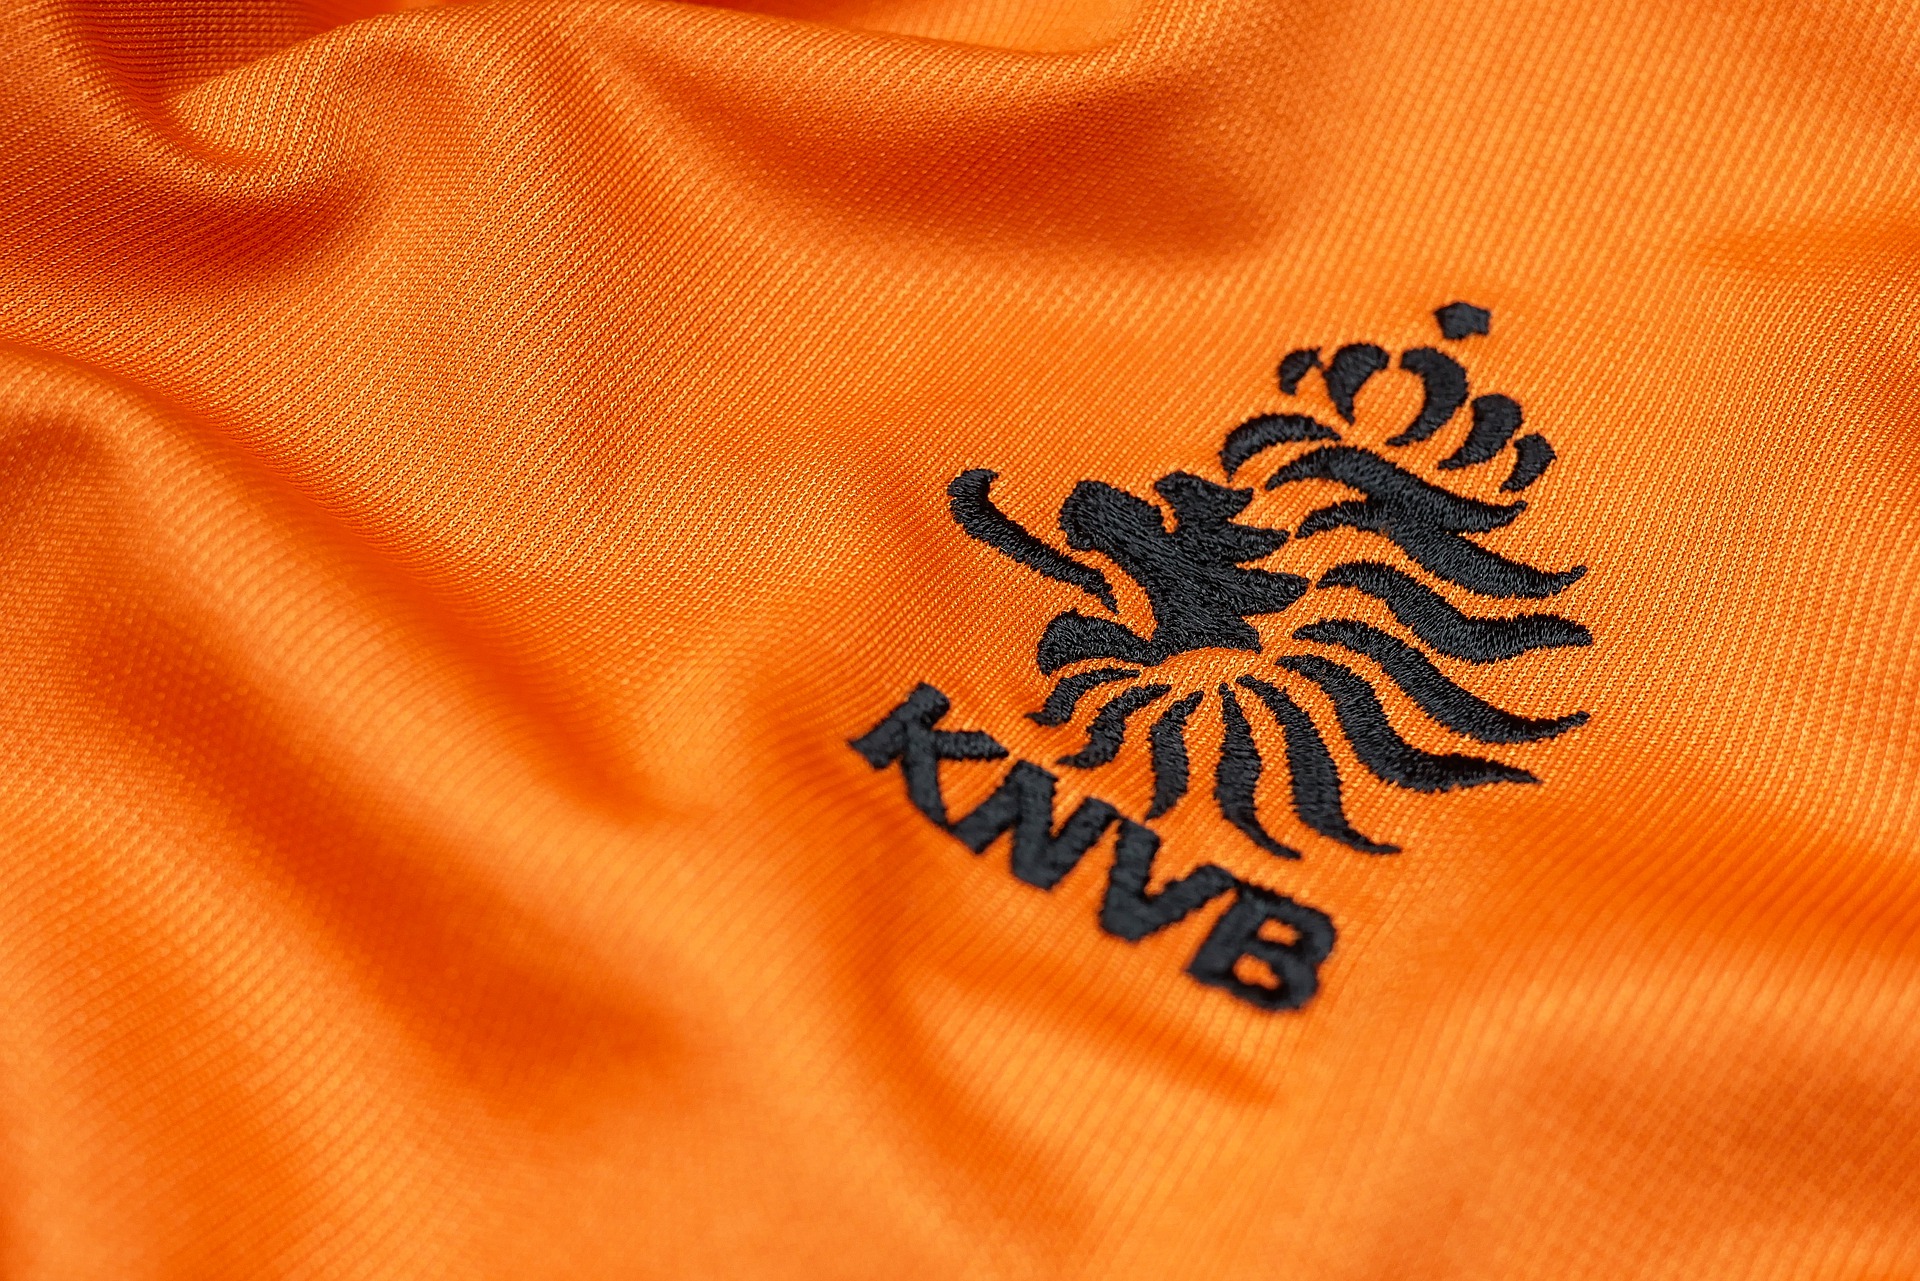 Nederlandse voetbalinternational smokkelde drugs